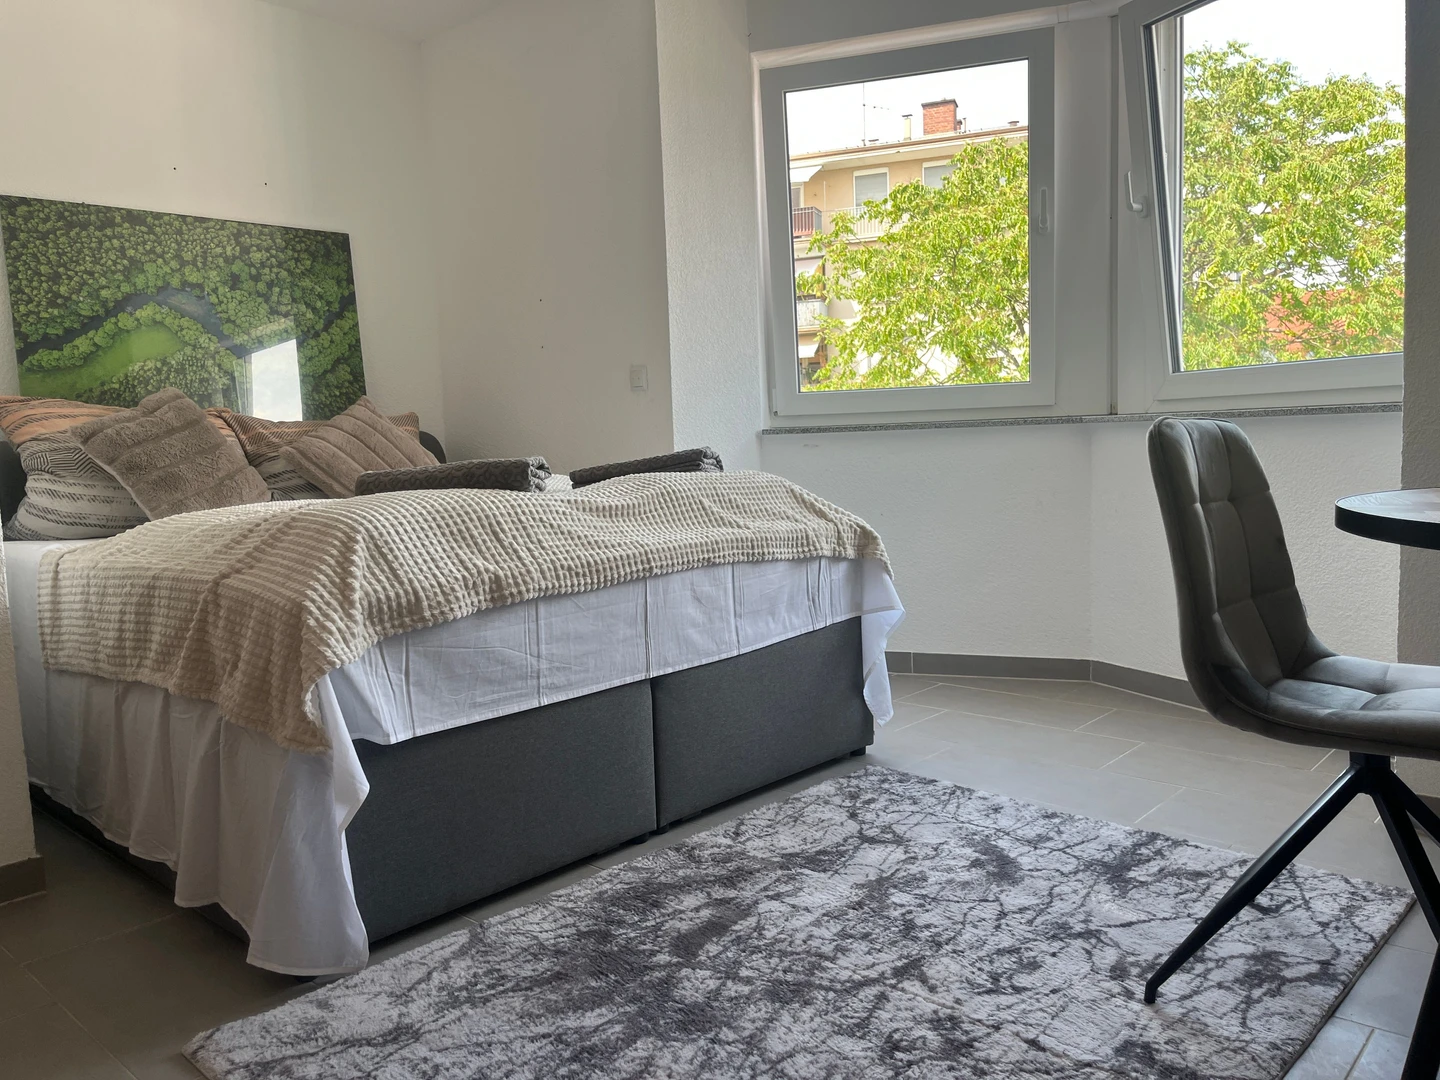 Pokój do wynajęcia z podwójnym łóżkiem w Karlsruhe